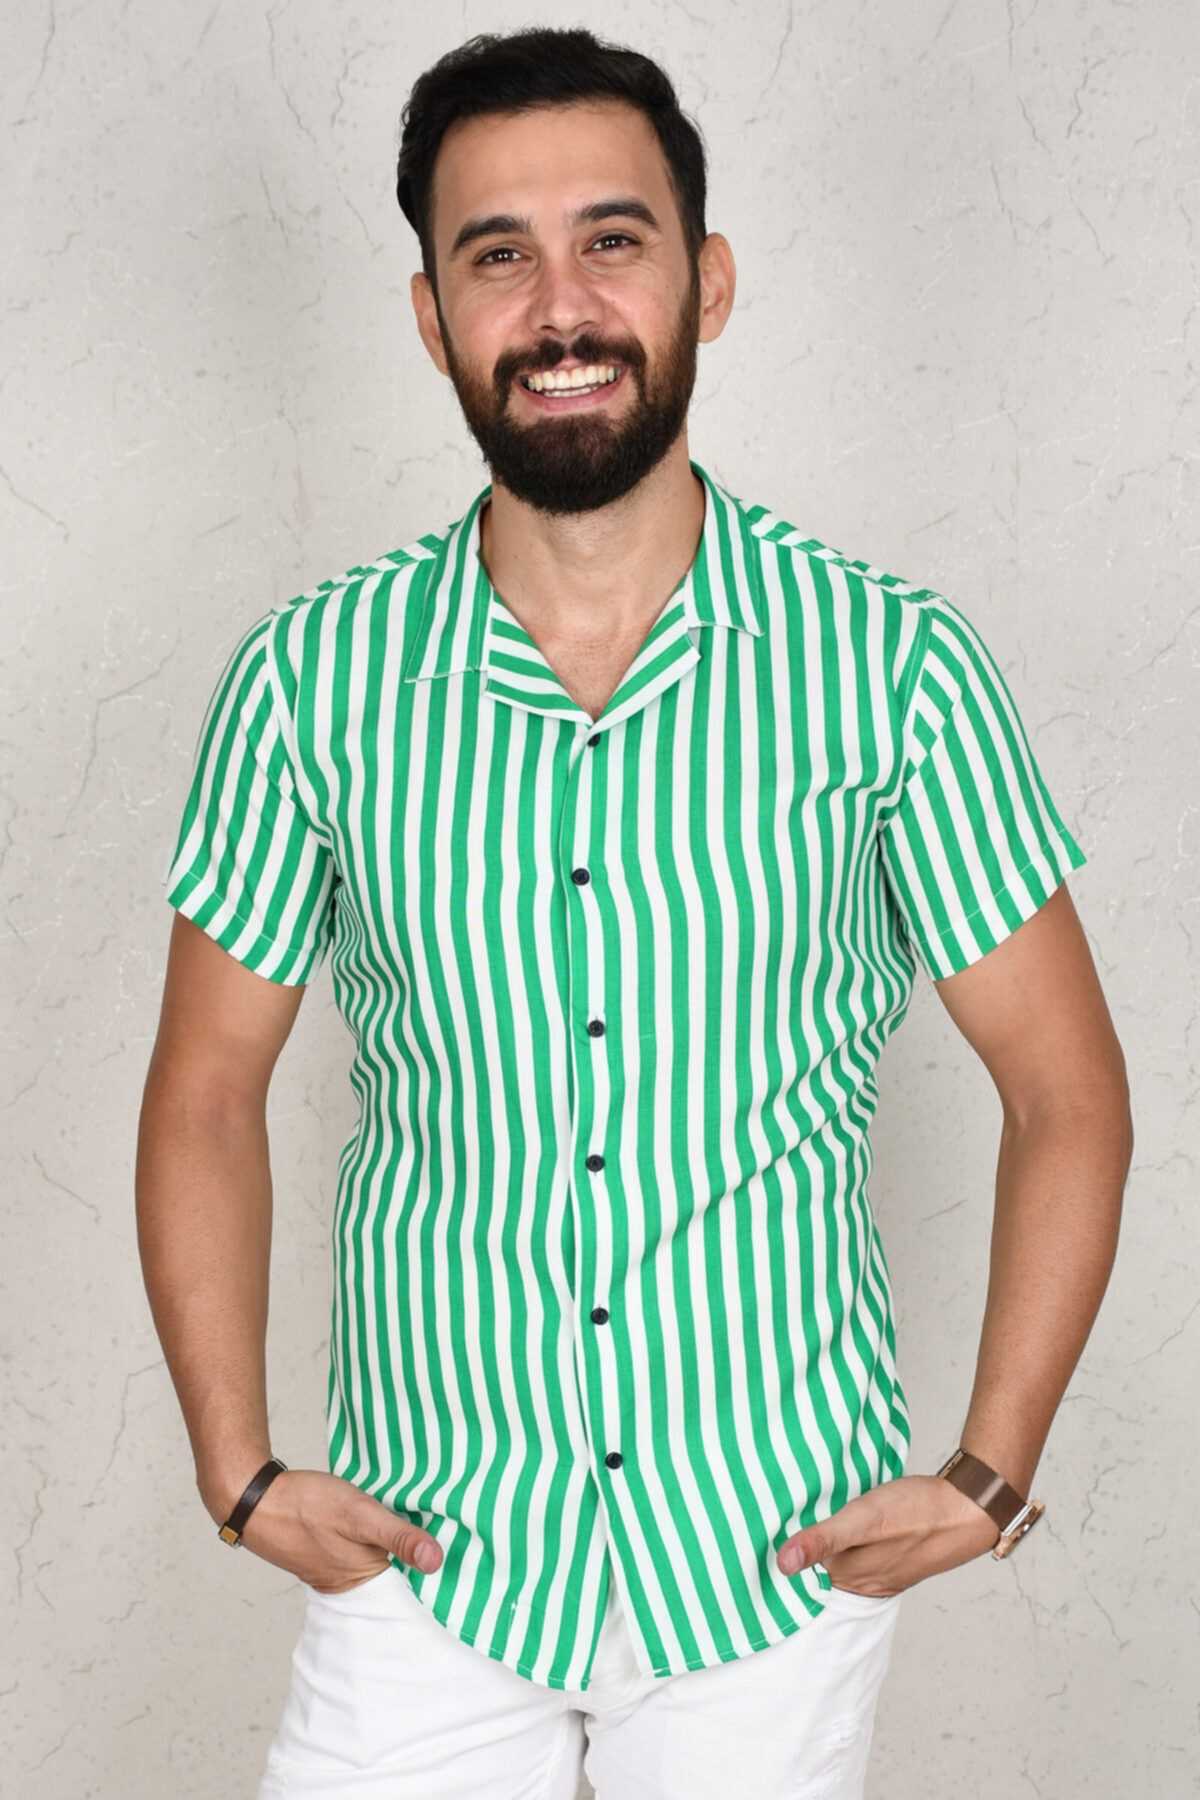 خرید غیر حضوری پیراهن از ترکیه برند DeepSEA رنگ سبز کد ty45711262